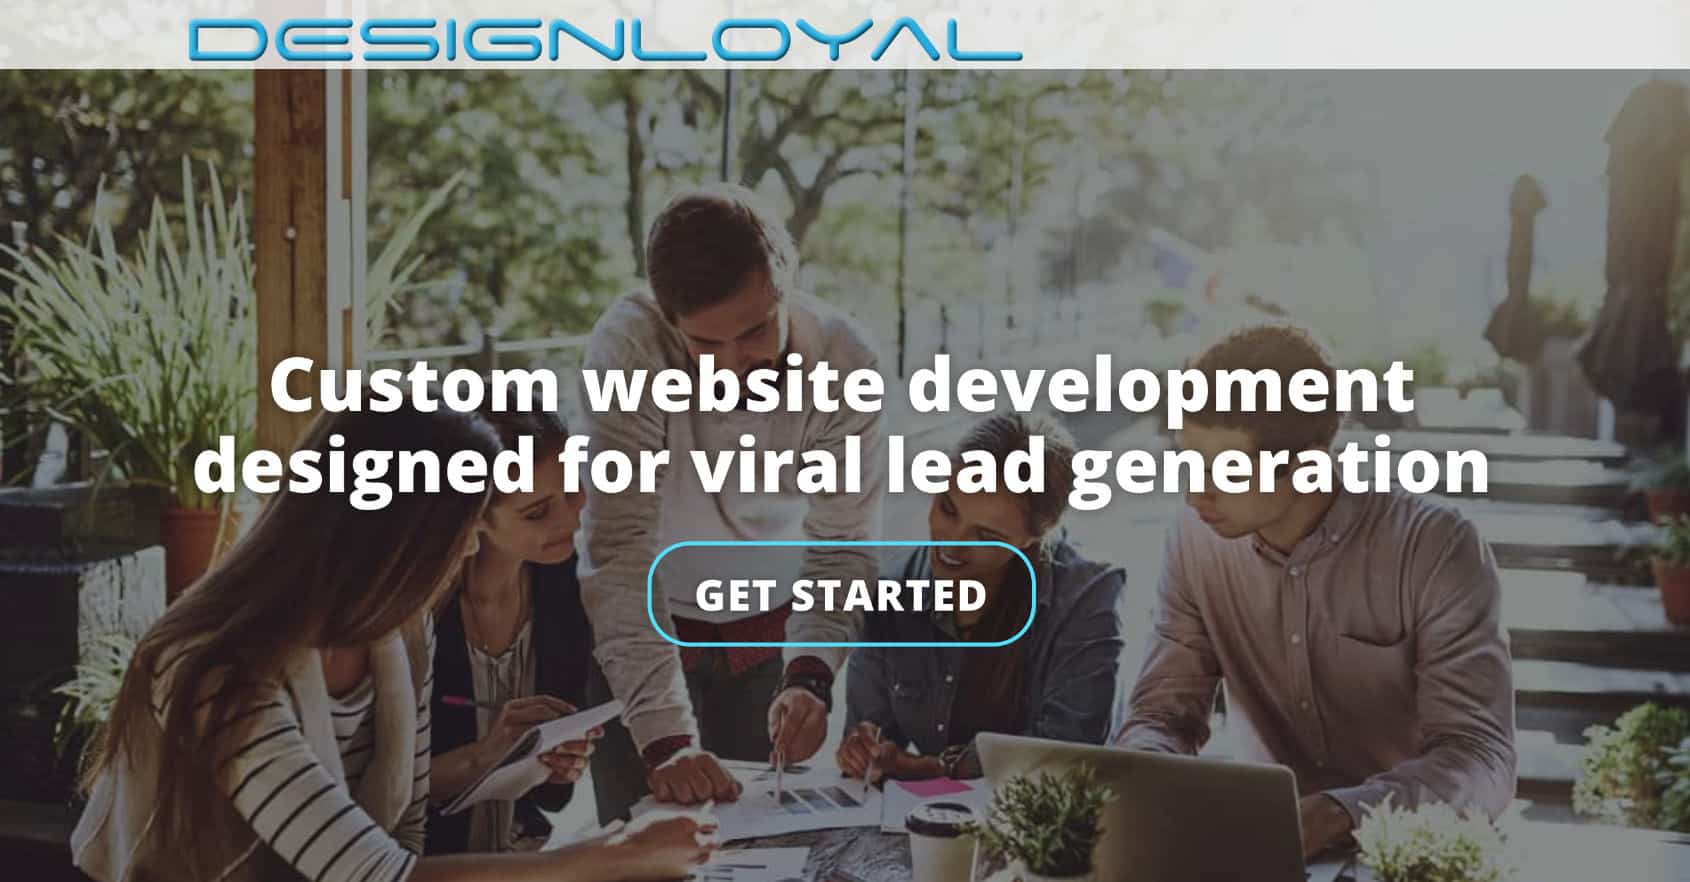 (c) Designloyal.com